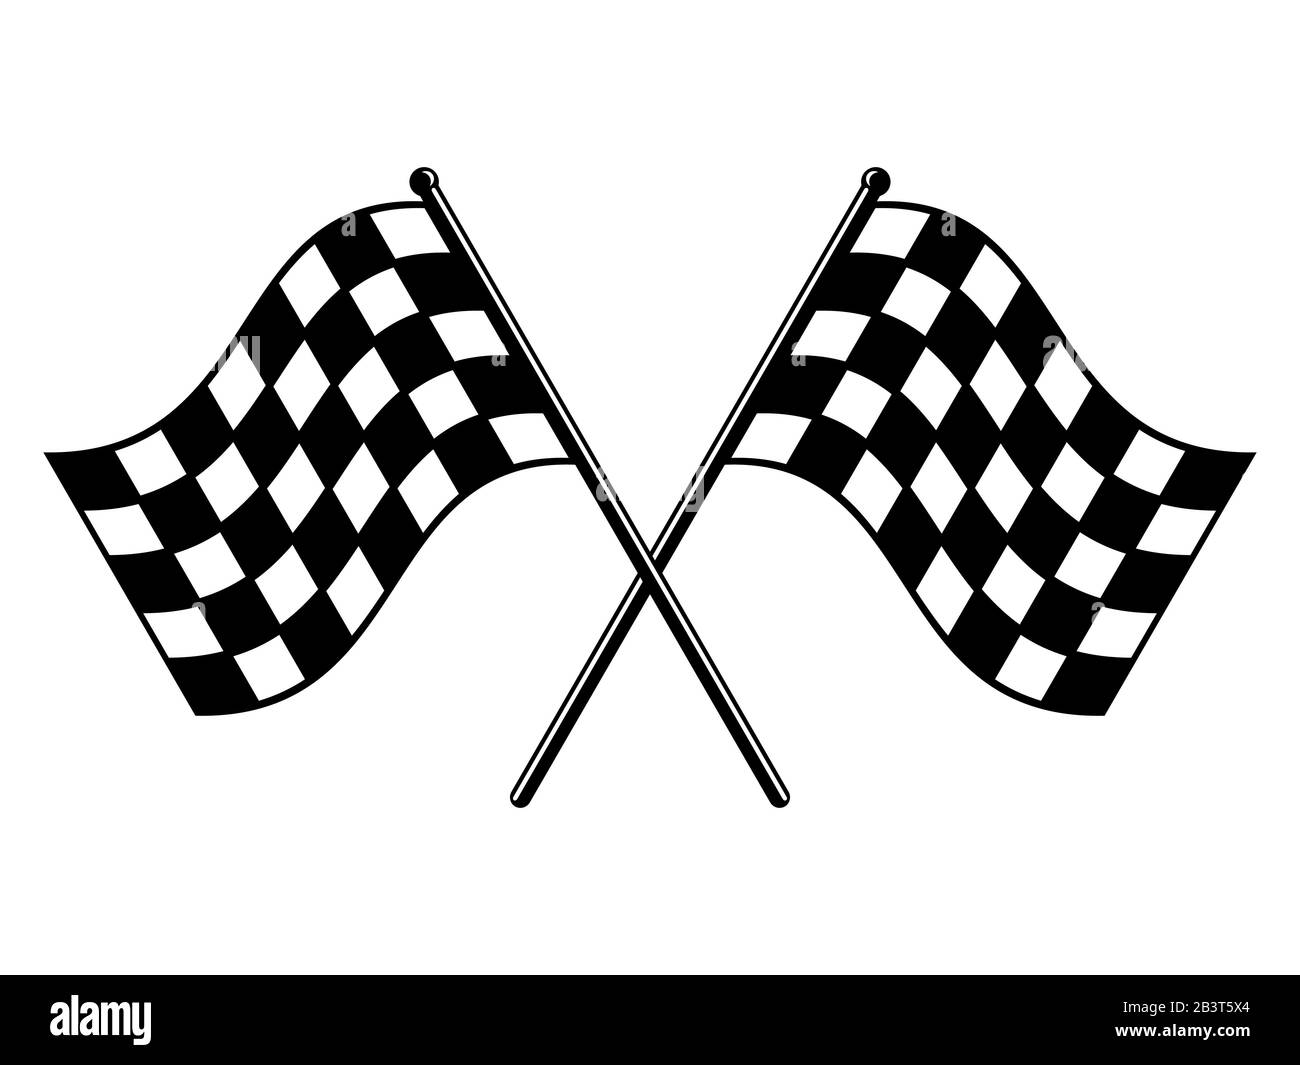 Karierte Flags. Schwarz-weiße Rassenfahne. Symbol für gerippte, gekreuzte Markierung beenden oder starten. Motorsport-Symbol oder Auto-Rennsymbol auf weißem Hintergrund. Letzte Runde Stock Vektor